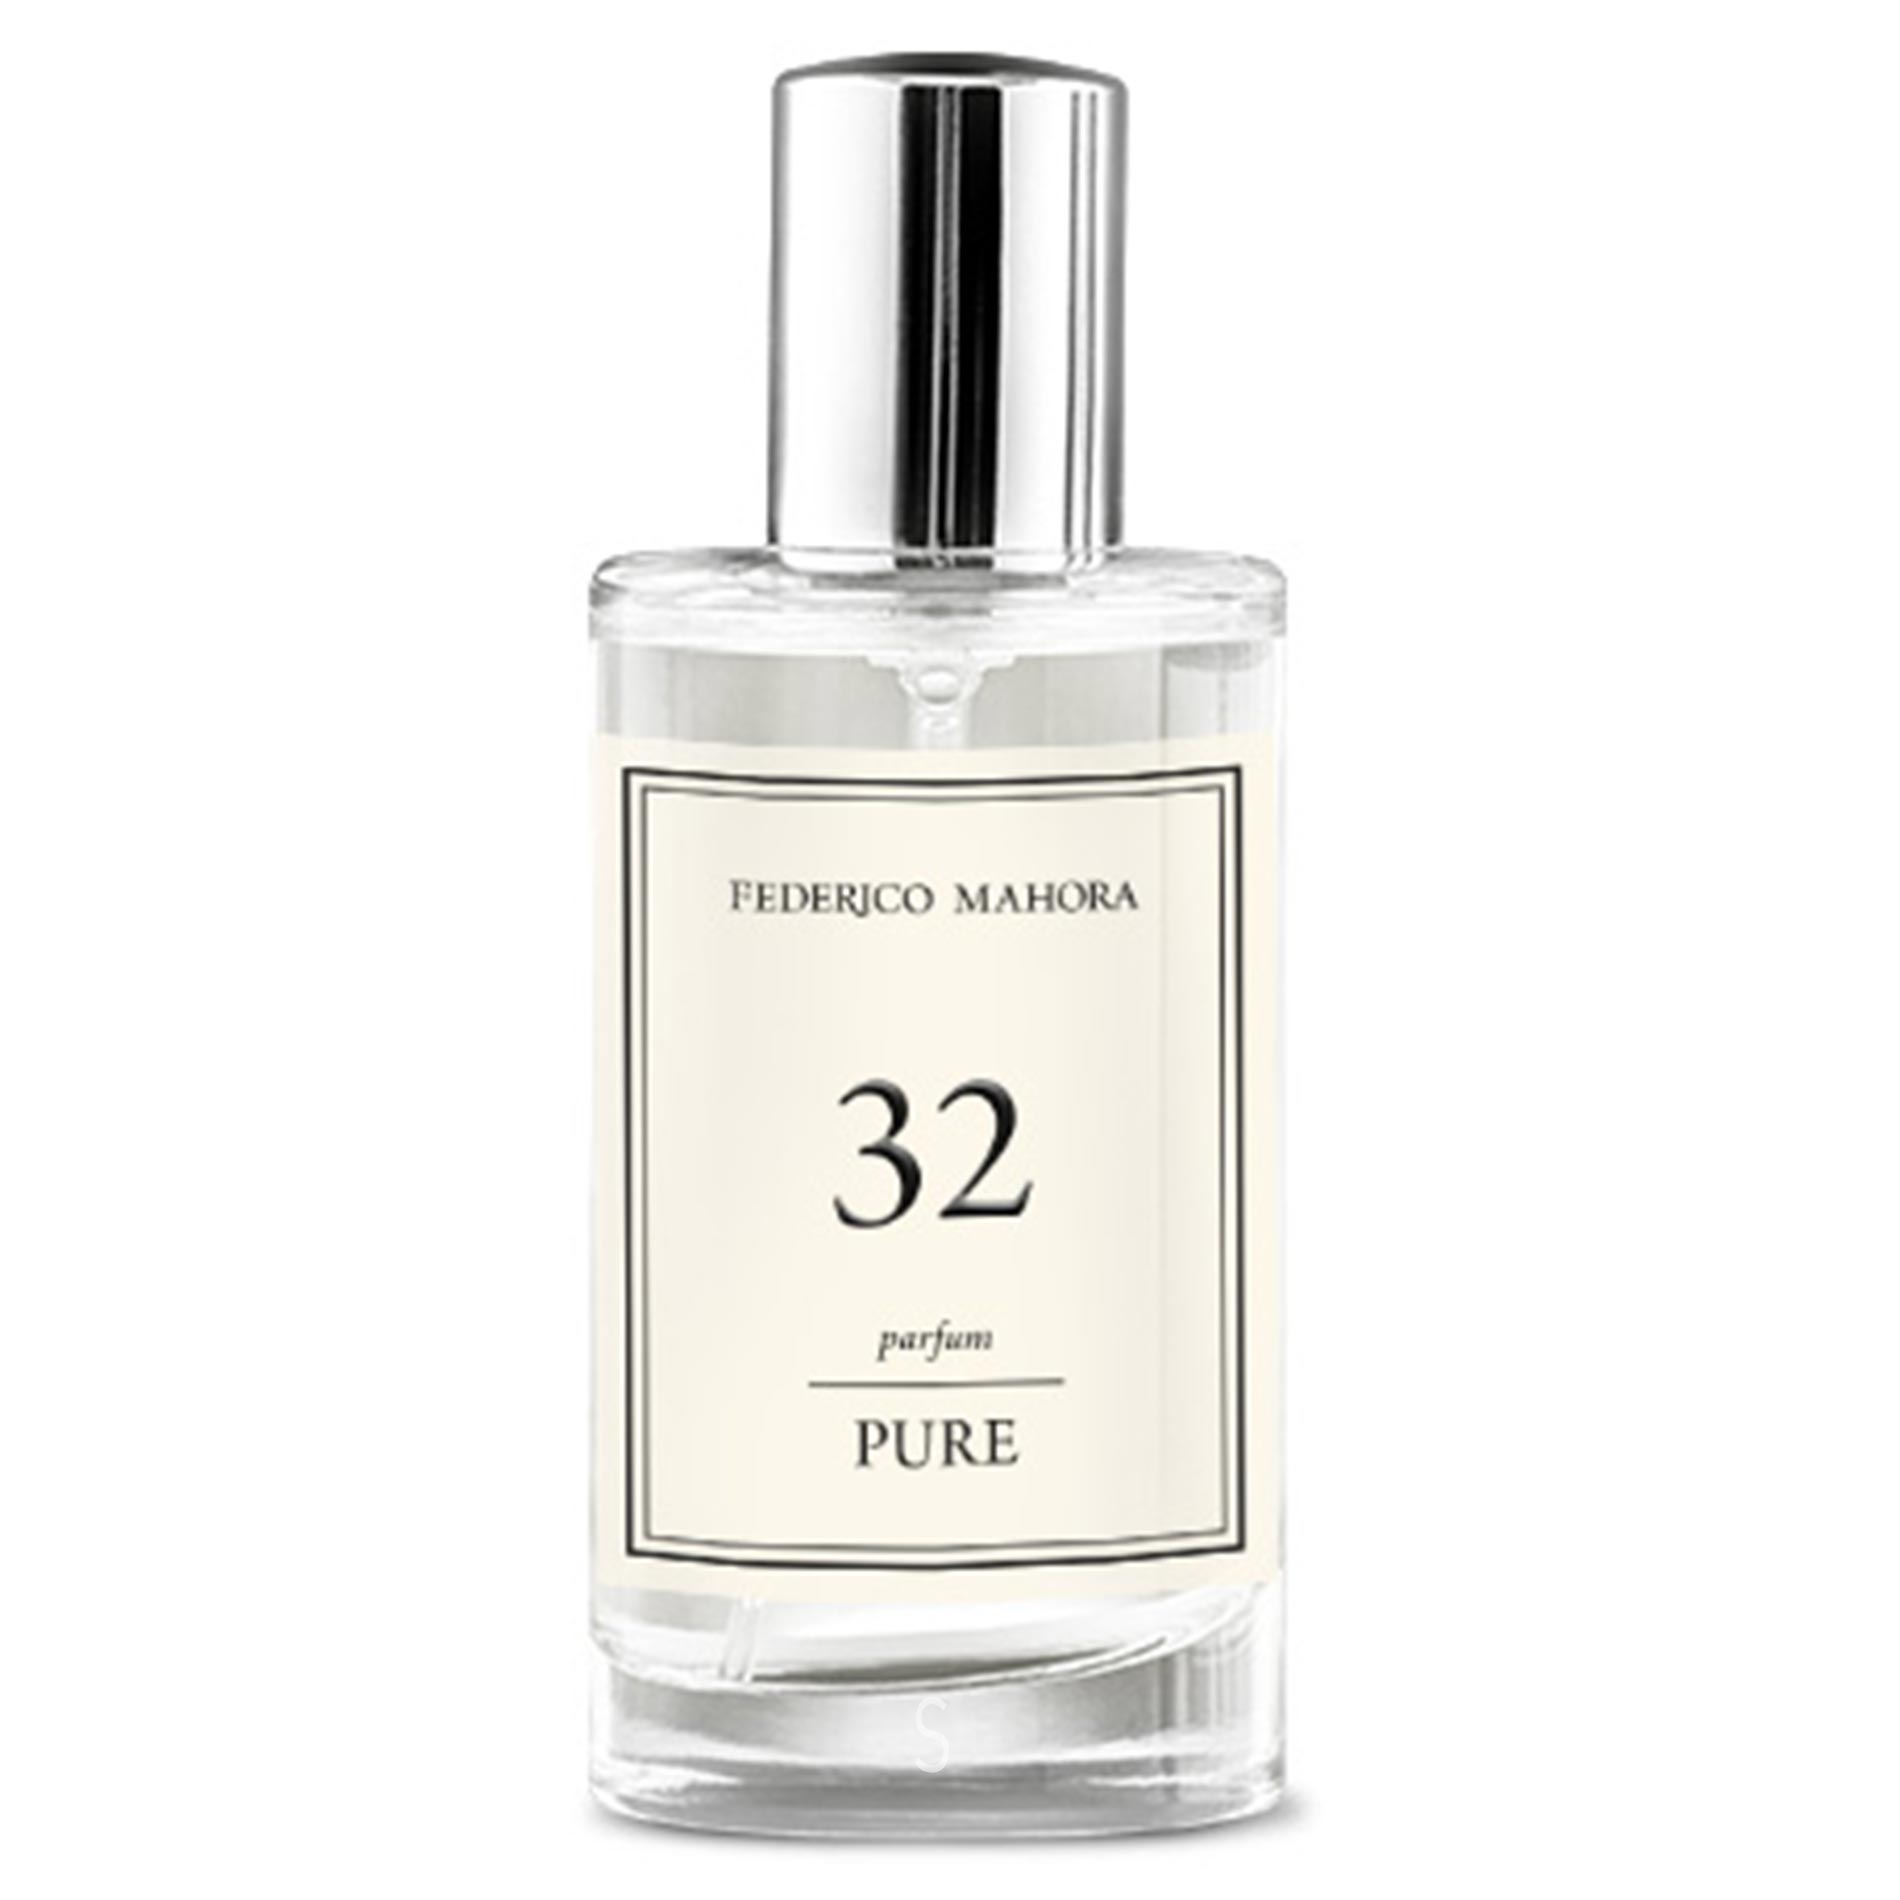 PURE 032 Parfum Federico Mahora